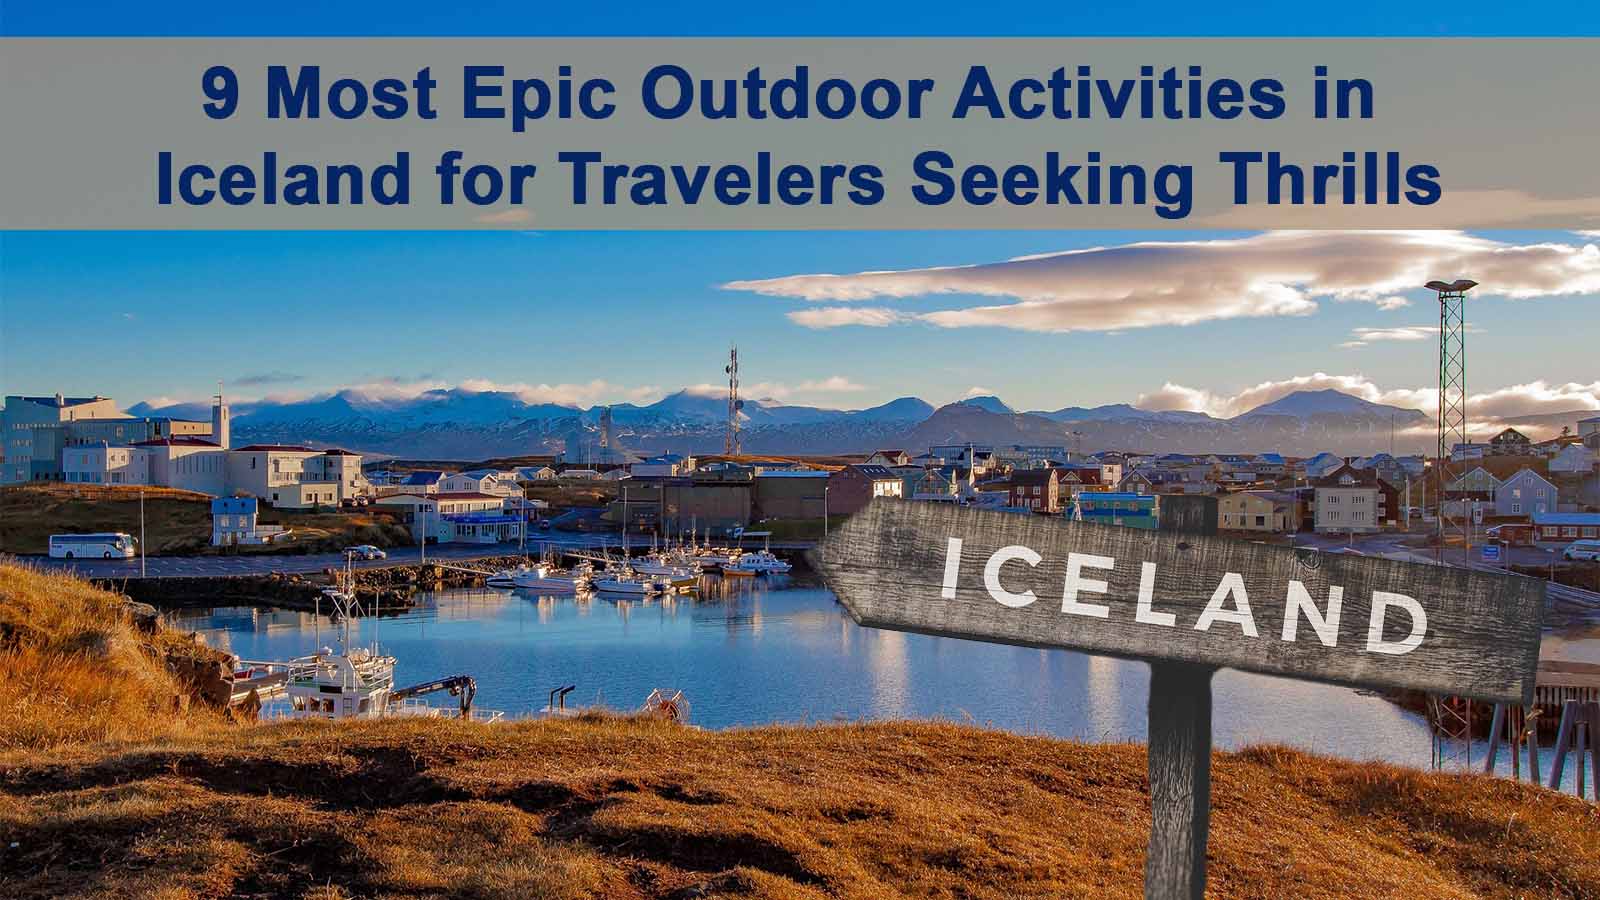 Outdoor Activities in Iceland